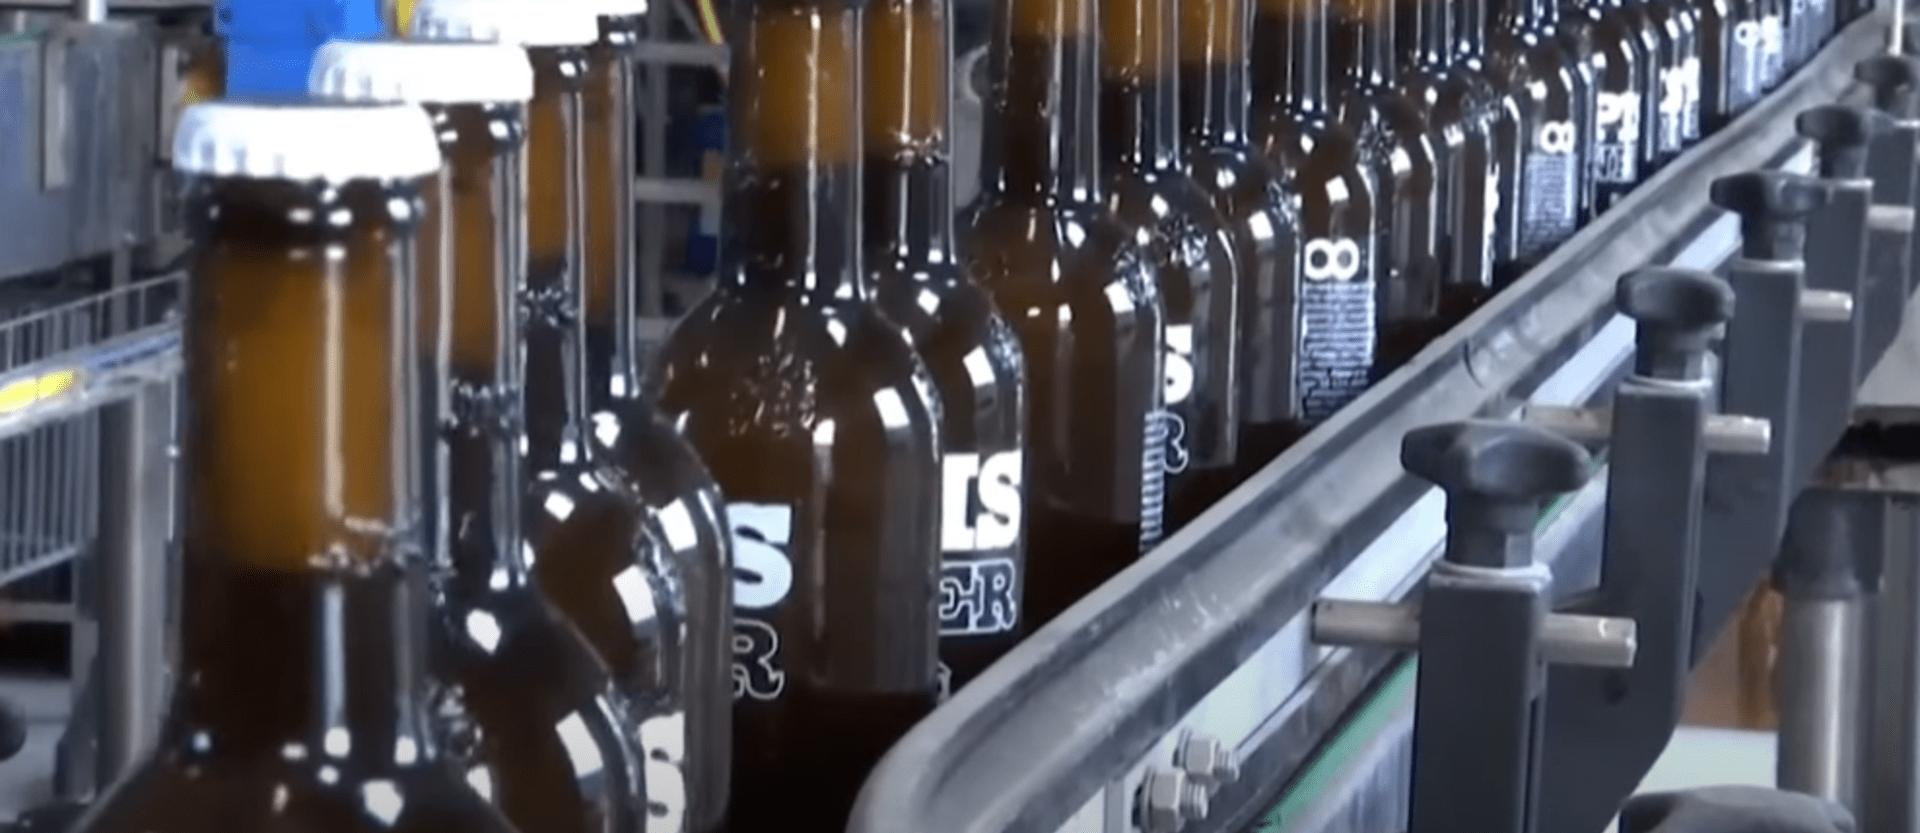 Recyklovaná moč jako surovina pro výrobu piva 1